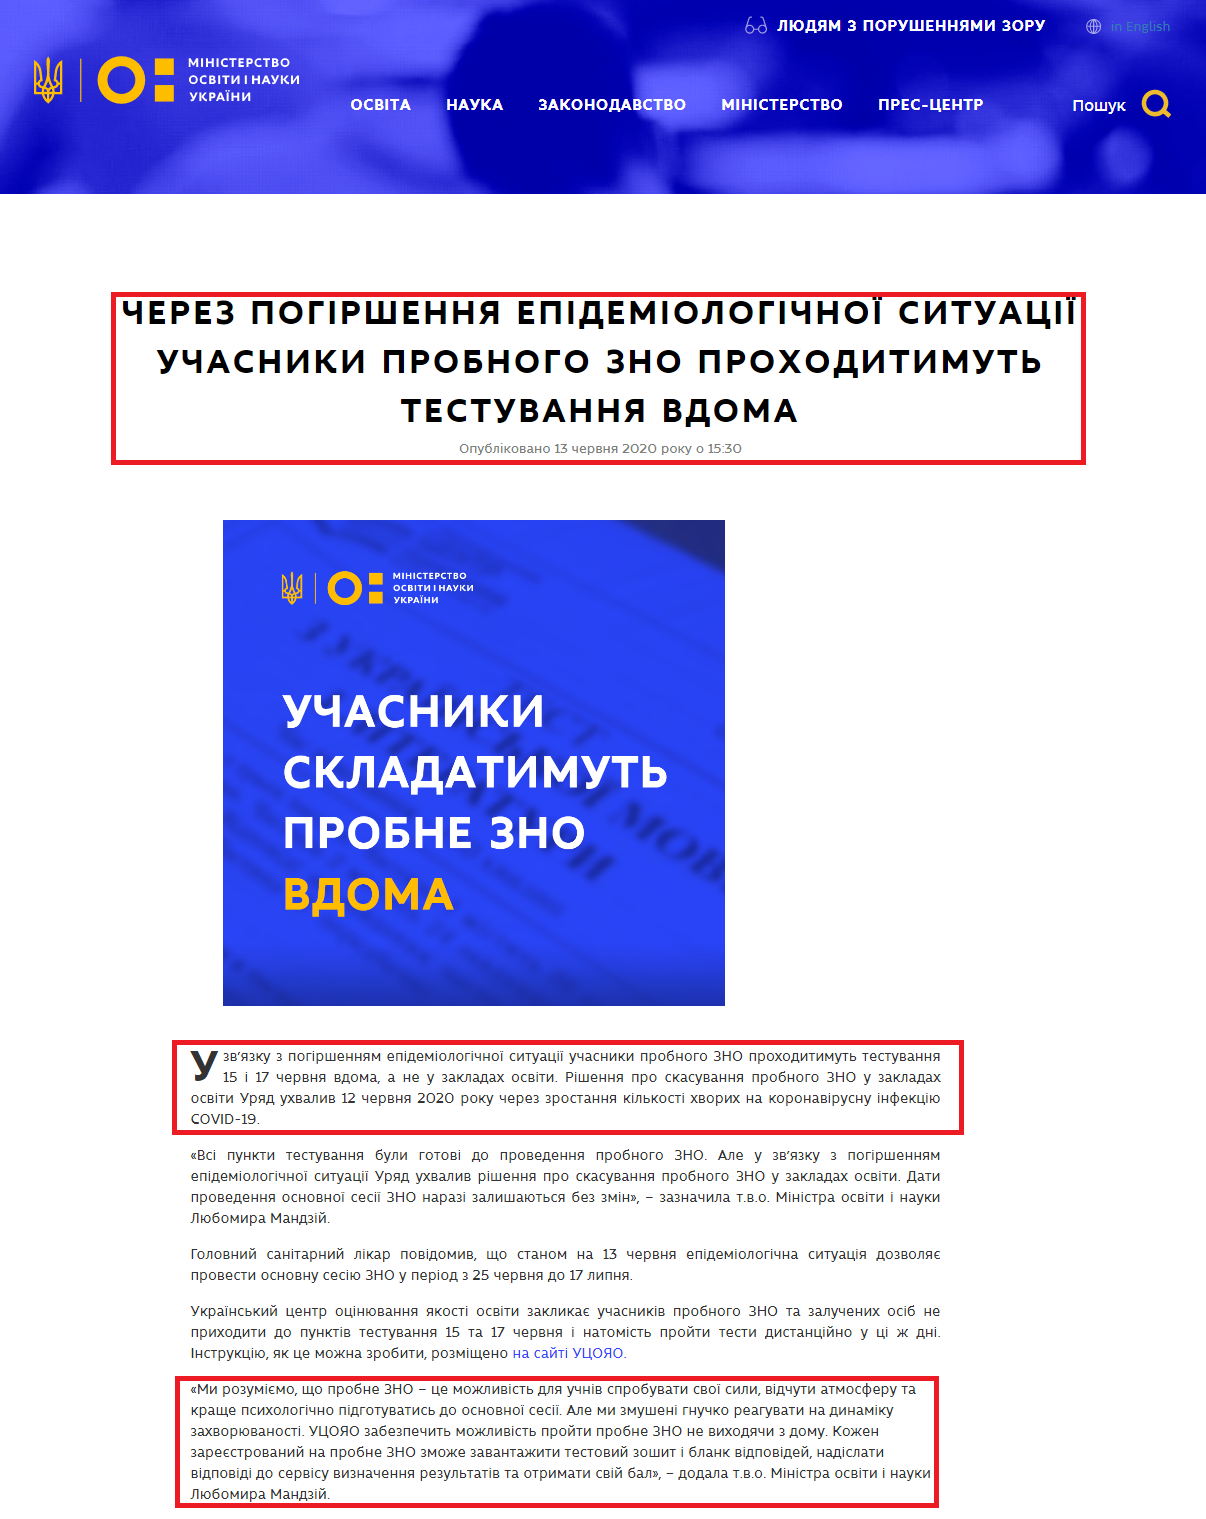 https://mon.gov.ua/ua/news/cherez-pogirshennya-epidemiologichnoyi-situaciyi-uchasniki-probnogo-zno-prohoditimut-testuvannya-vdoma